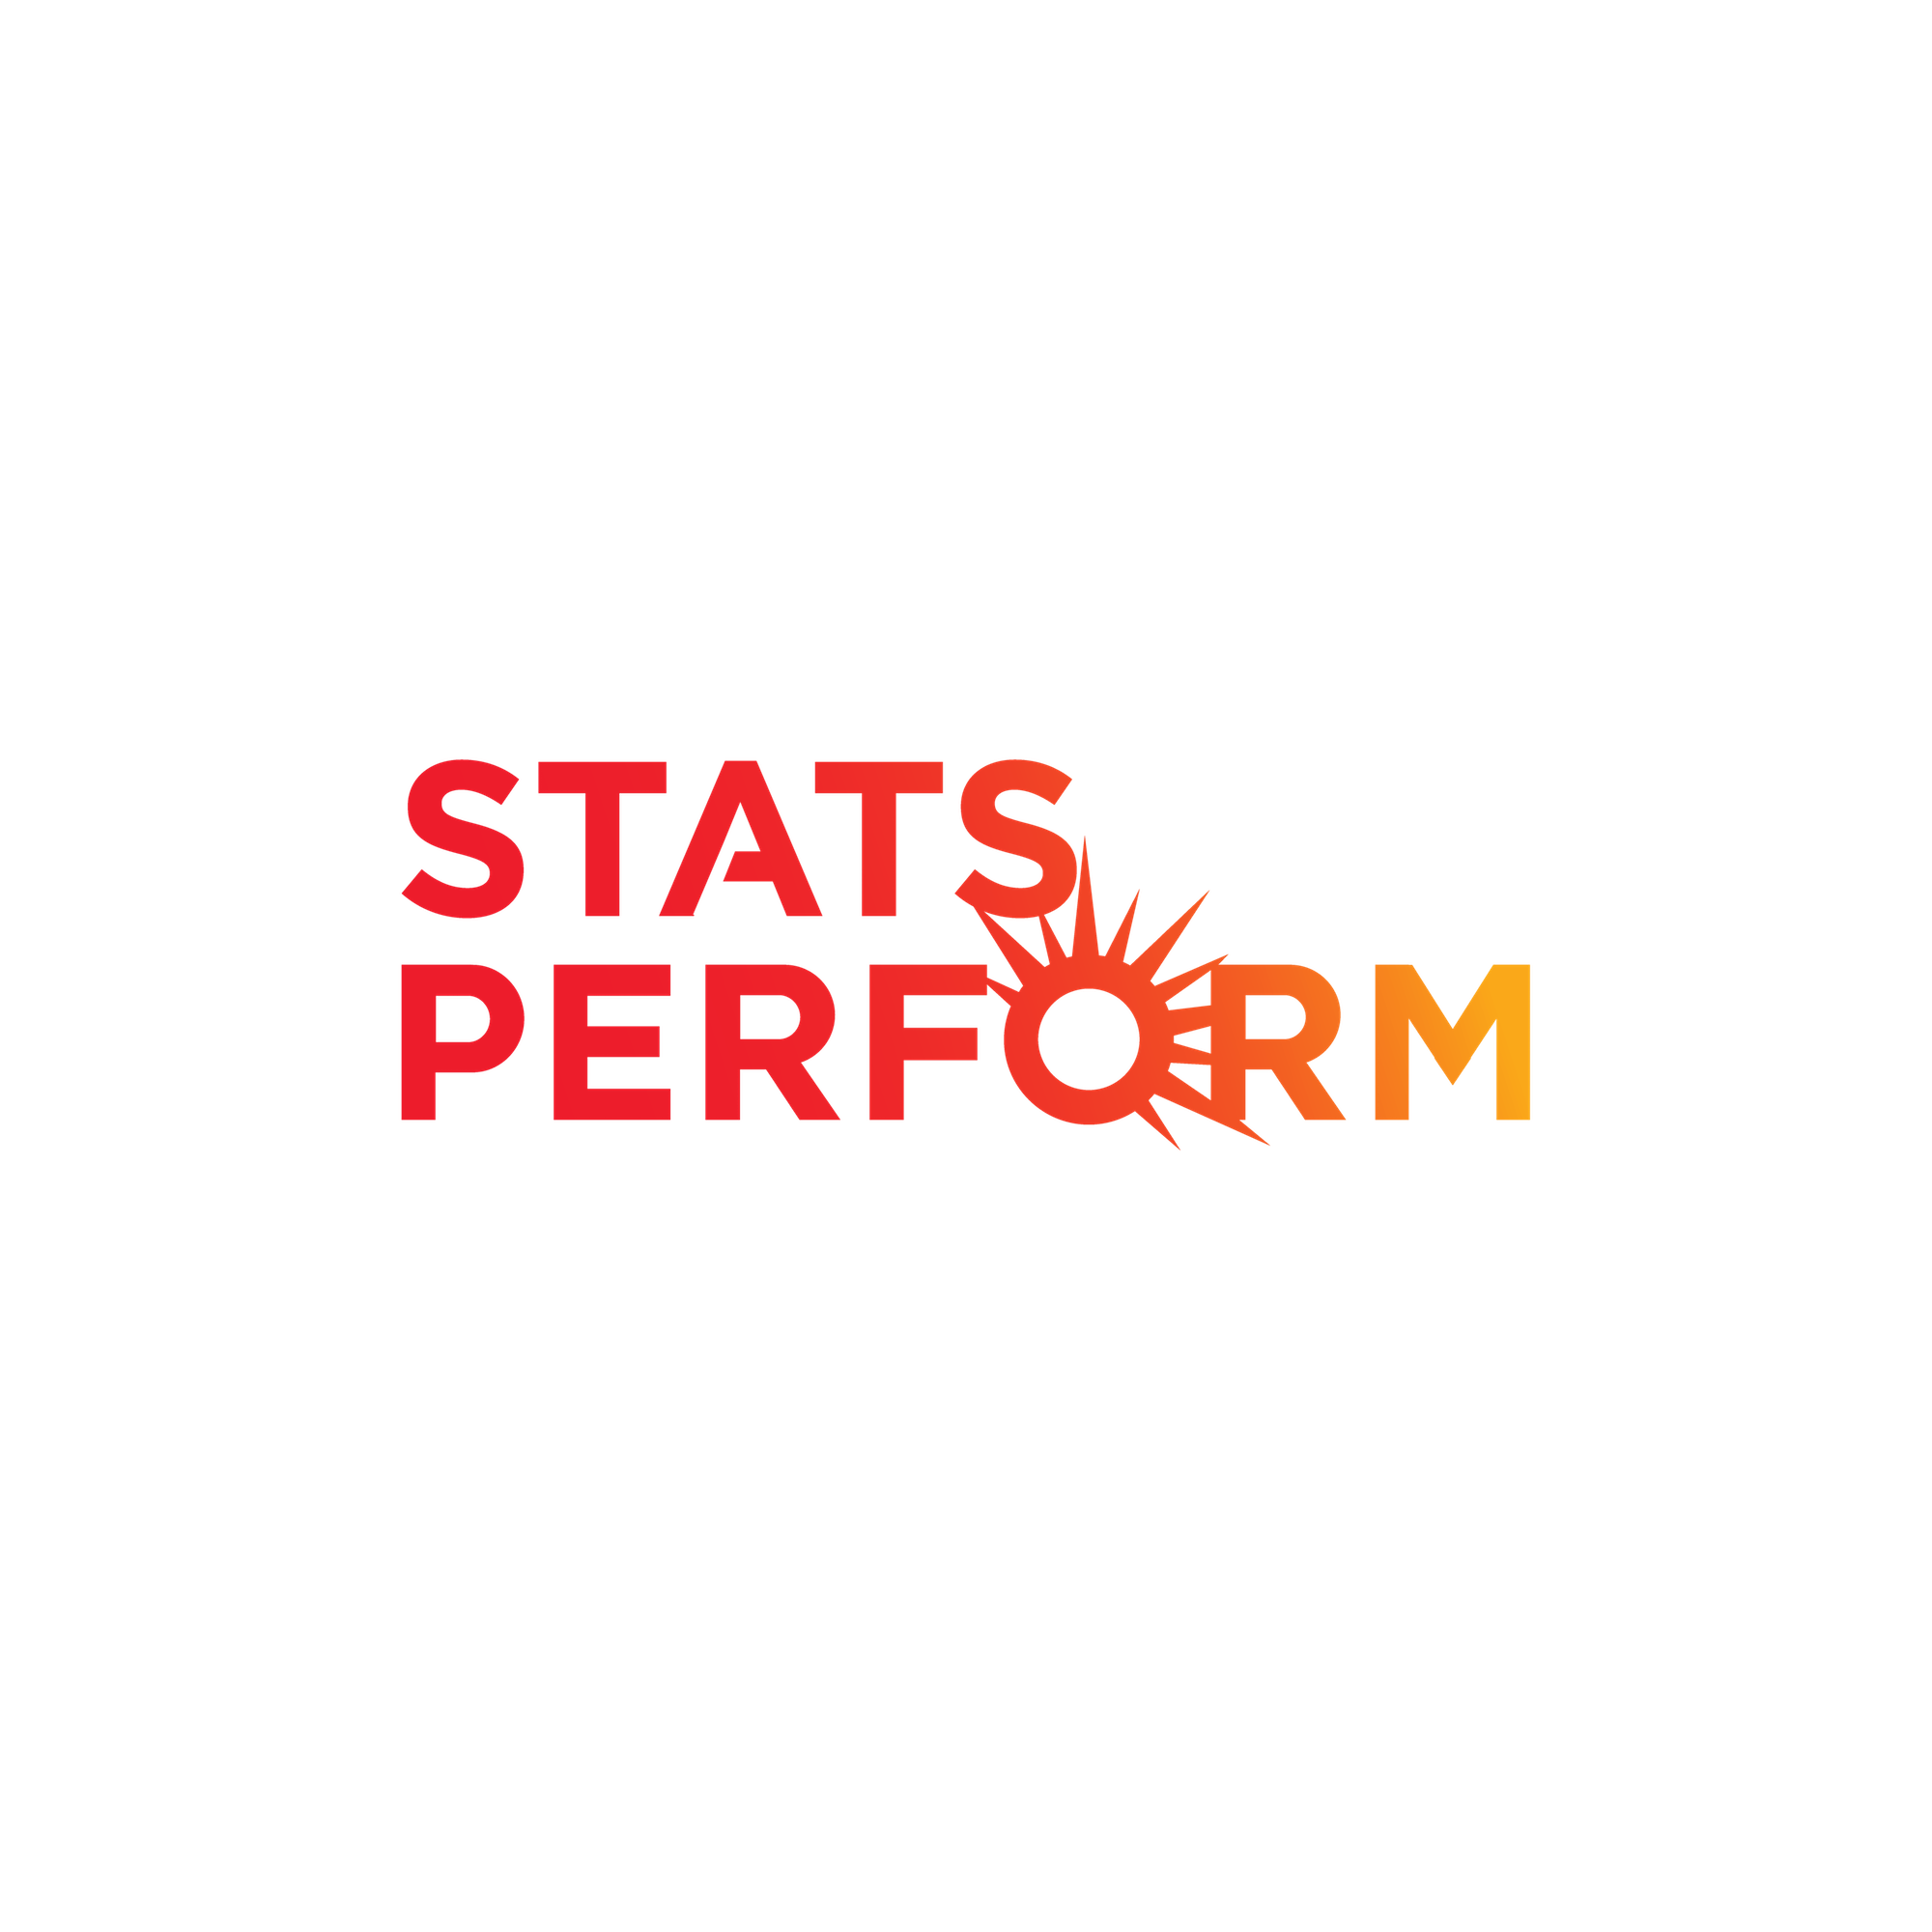 Stats-Perform-15-copy-1-1